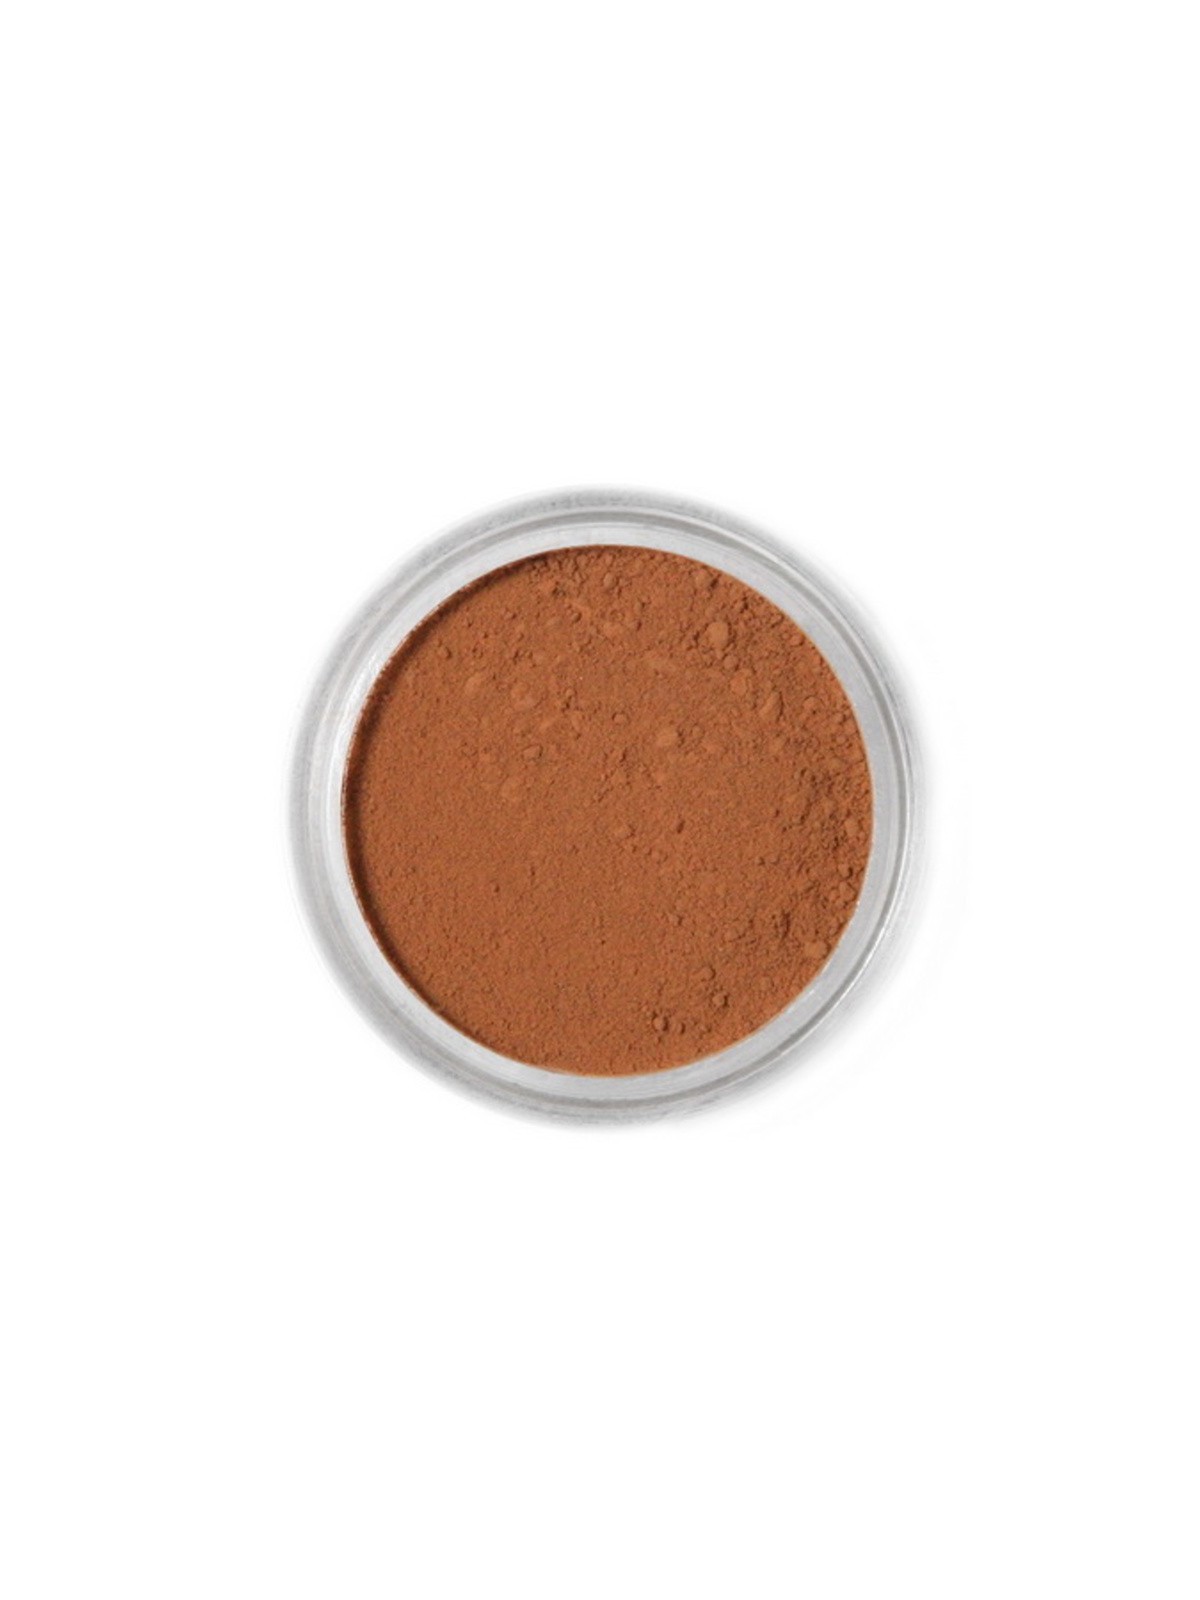 Jadalna farba proszkowa Fractal - brązowa - Czekolada Mleczna, Miękka Czekolada (1,5 g)